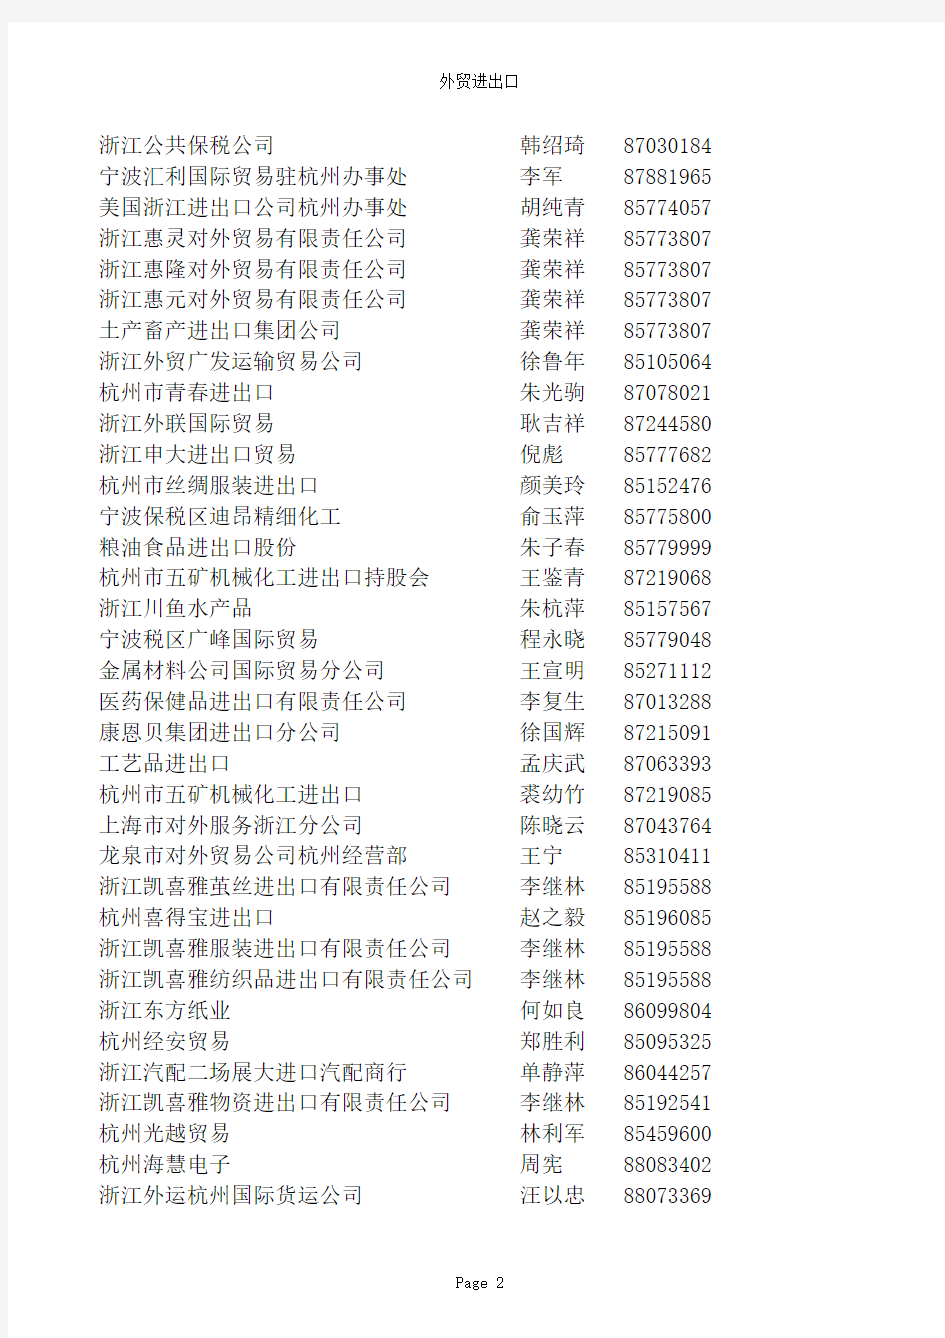 2010最新年浙江省外贸进出口企业黄页名录(1)